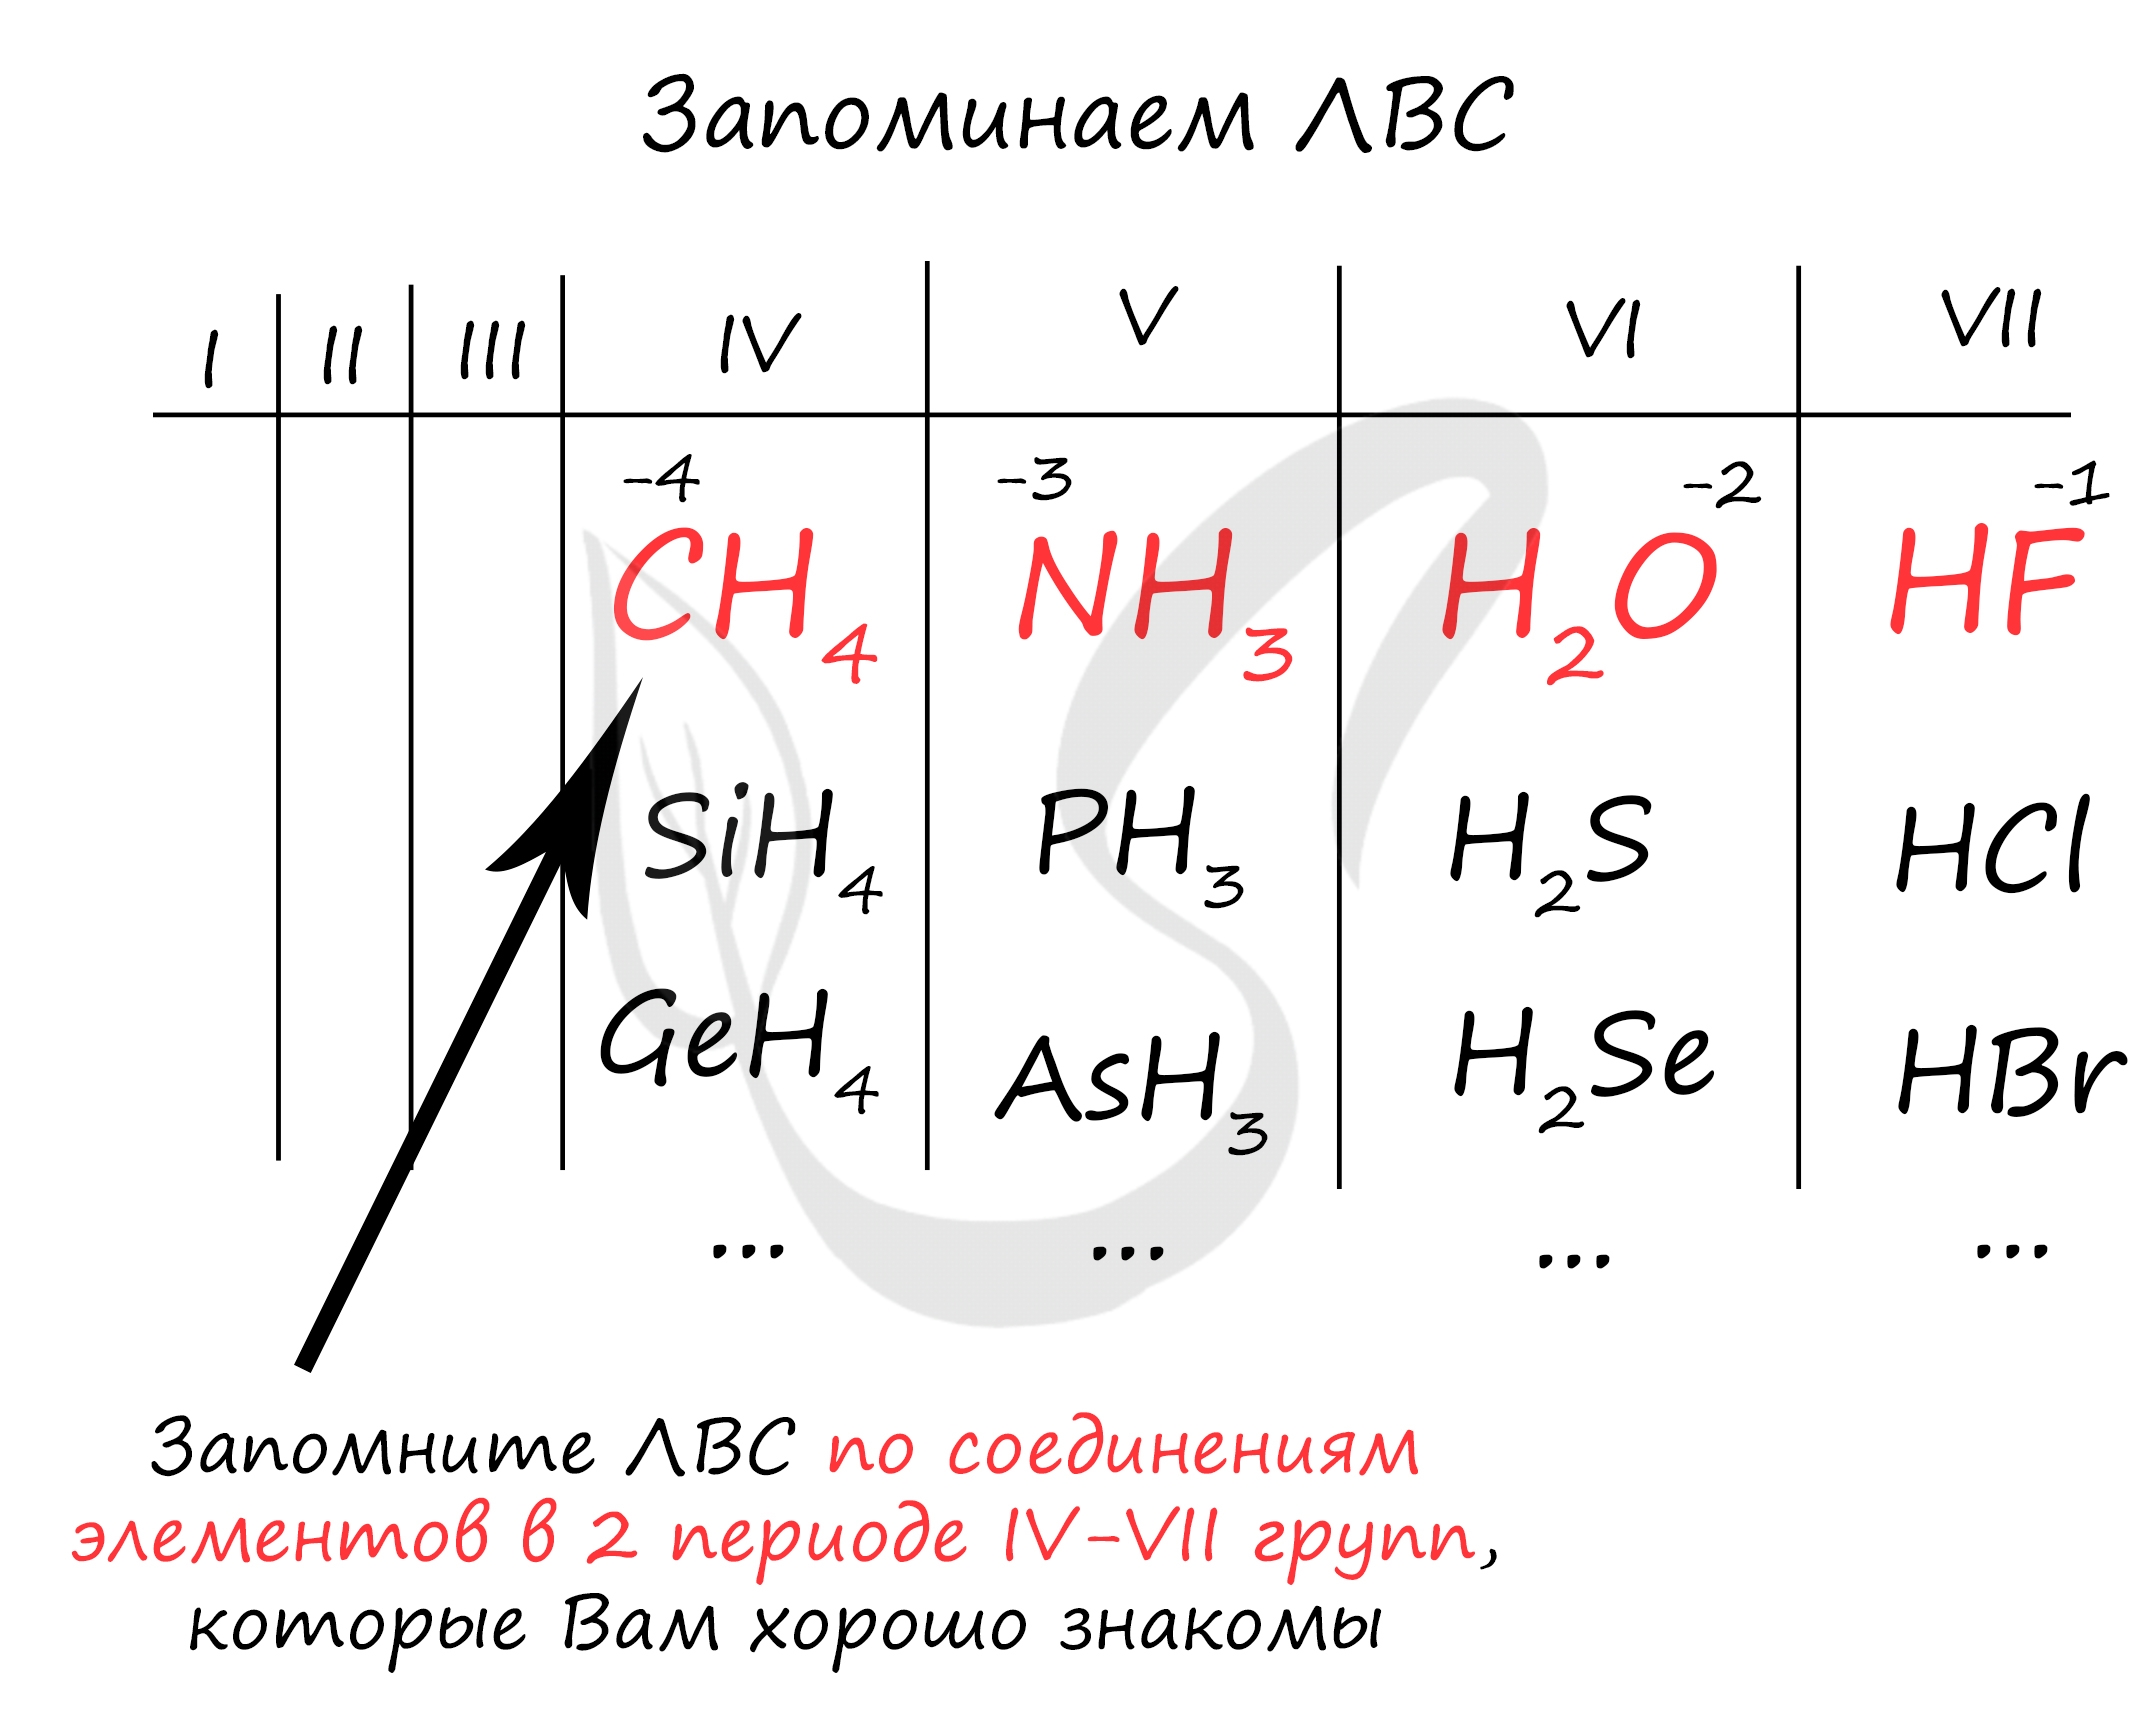 Летучие водородные соединения состава эн3 образуют. Валентность в летучих водородных соединениях. Летучие водородные соединения в таблице Менделеева. Высшие оксиды и летучие водородные соединения. Летучие водородные соединения реакции.